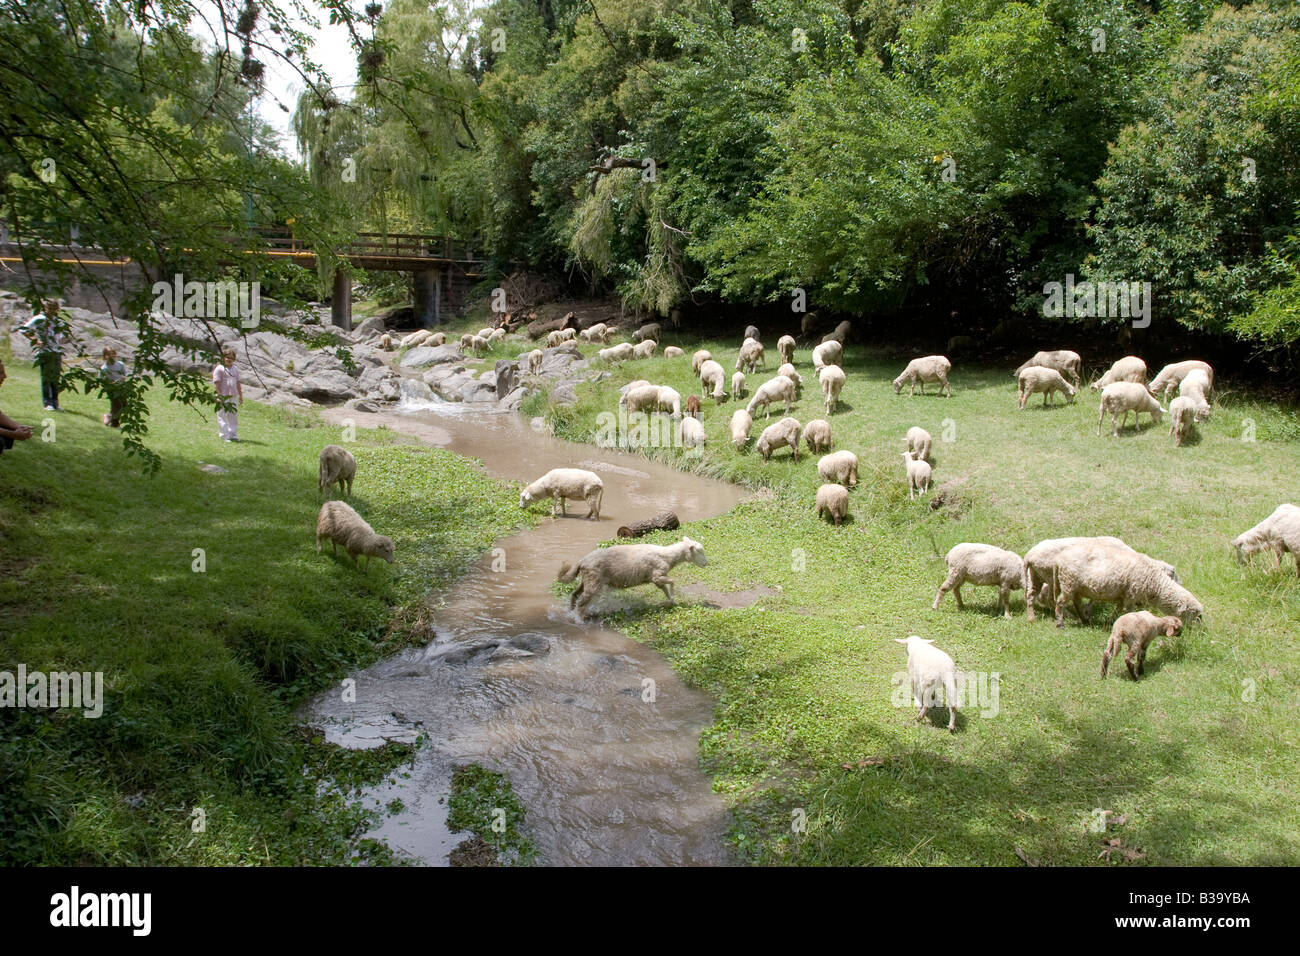 Pecore al pascolo del bestiame nei pressi di un ruscello in Villa General Belgrano Calamuchita Cordoba Argentina alcuni turisti guardano la scena Foto Stock